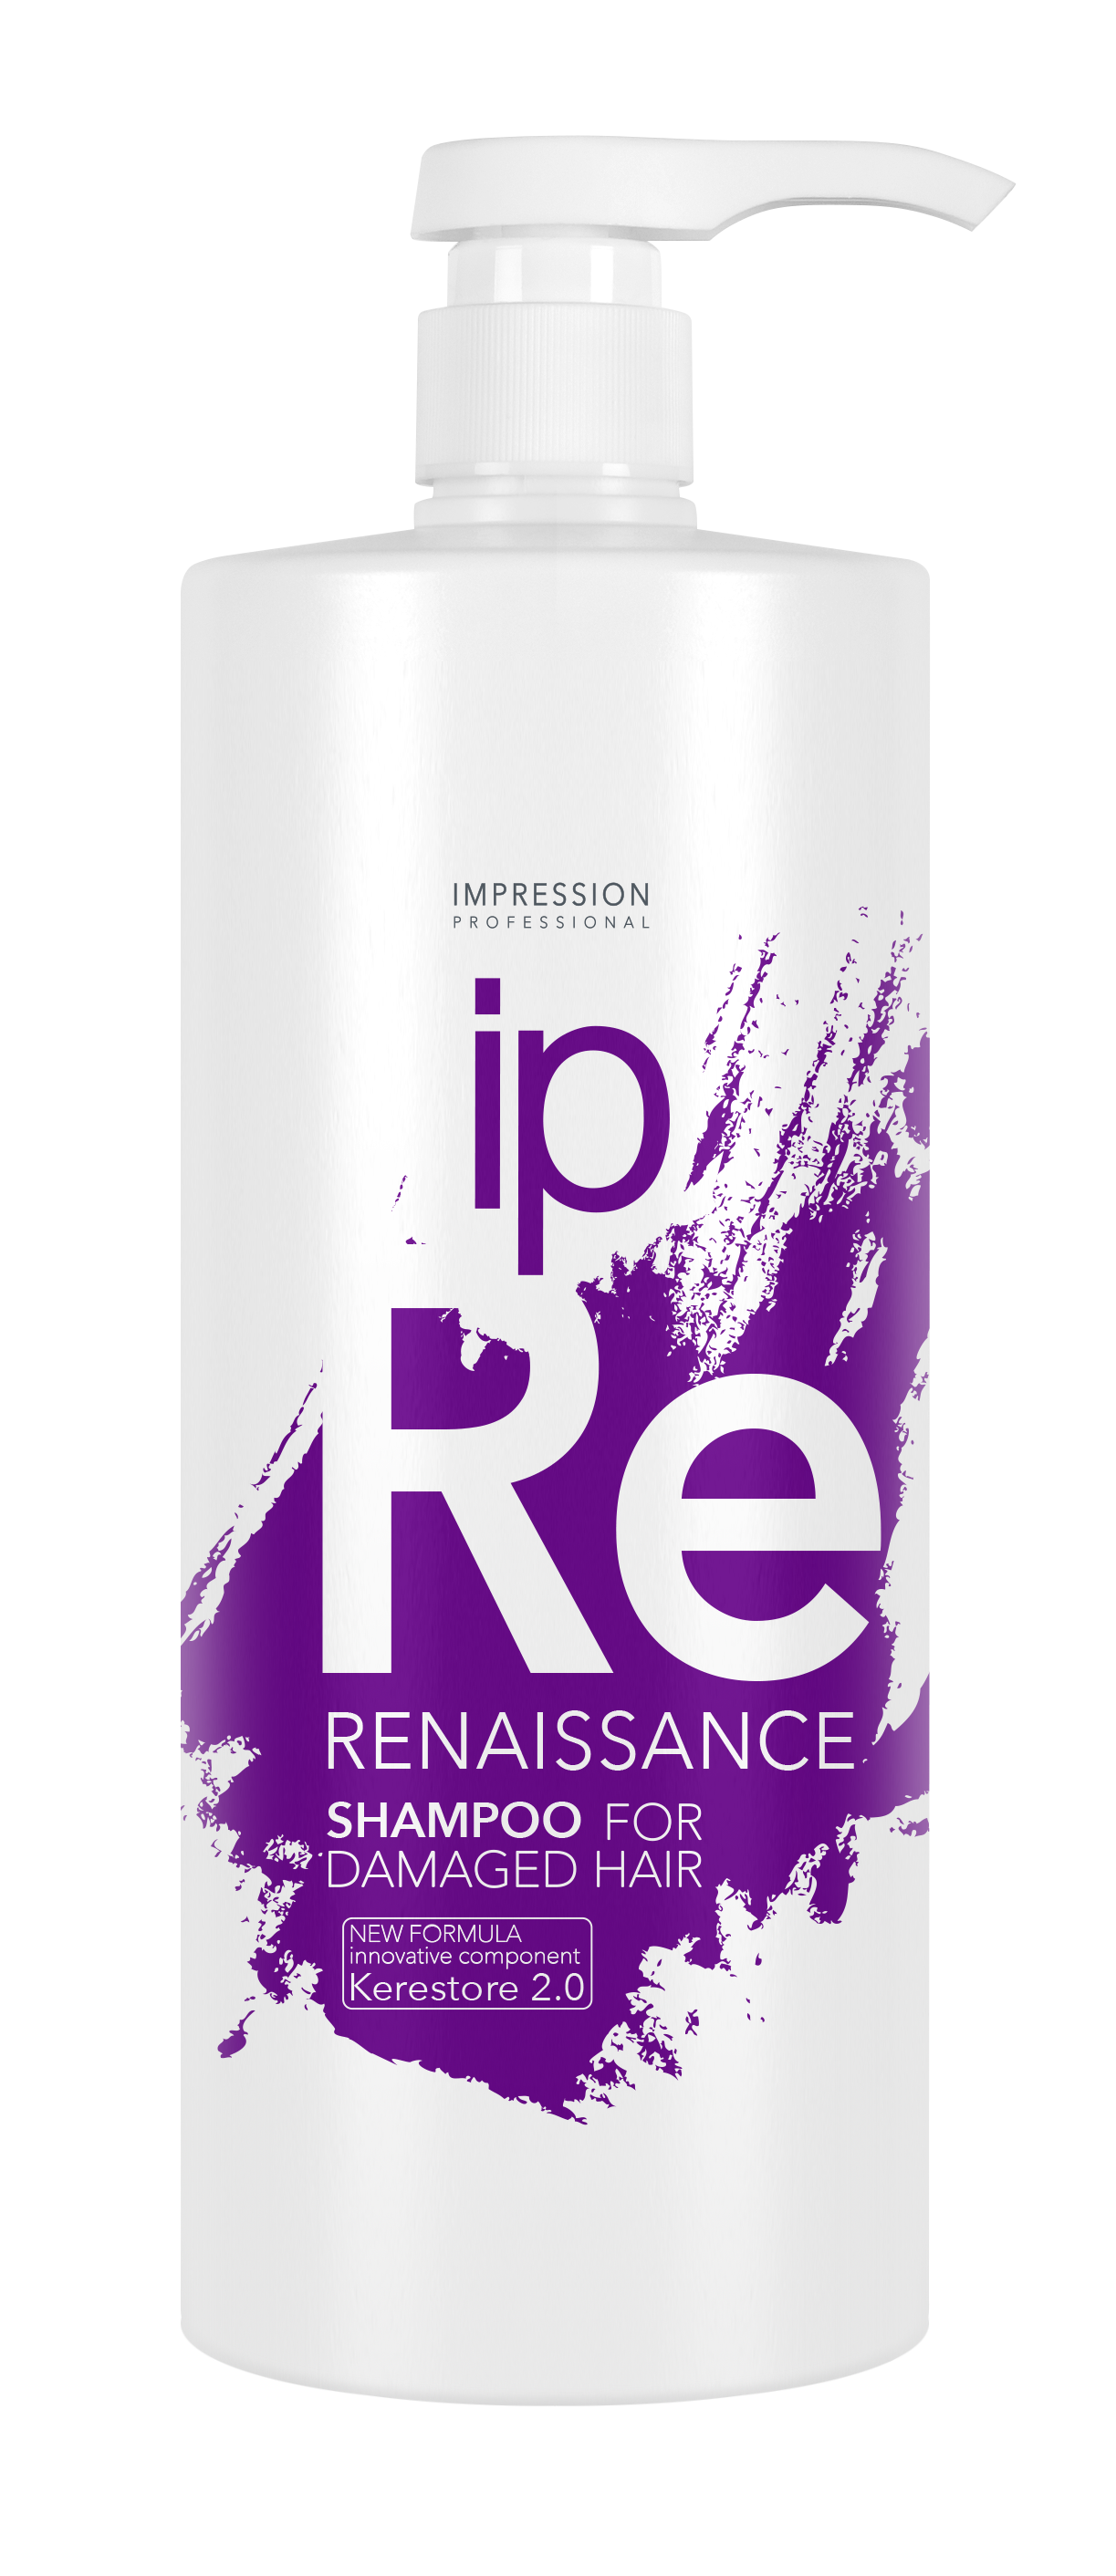 Шампунь для волос Impression Professional Renaissance восстанавливающий для поврежденных волос 1000мл - в интернет-магазине tut-beauty.by